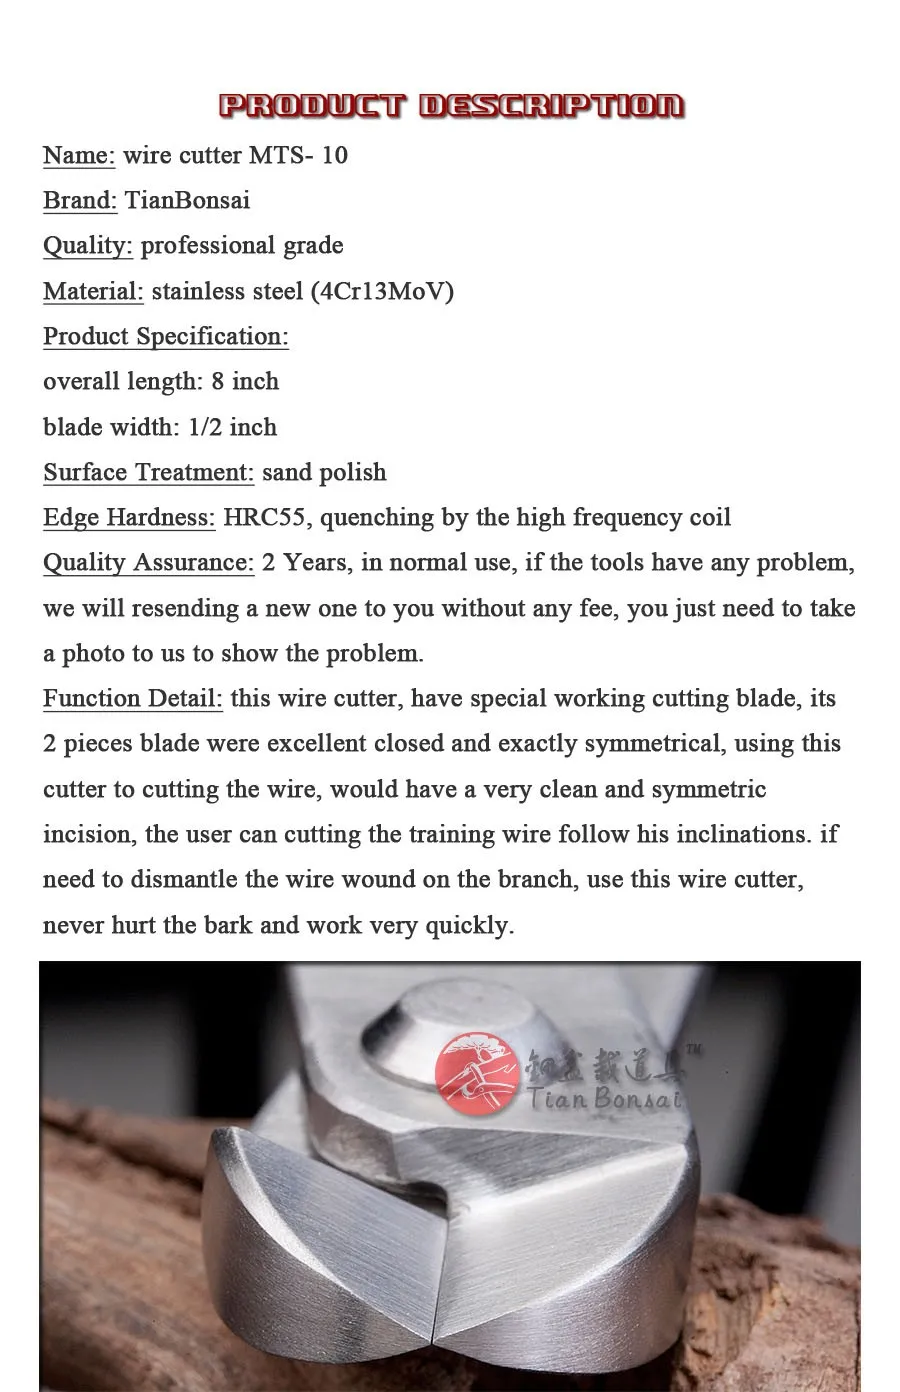 205 мм резак для проволоки уровень профессионального качества 4Cr13MoV нержавеющая сталь Бонсай инструменты сделаны TianBonsai